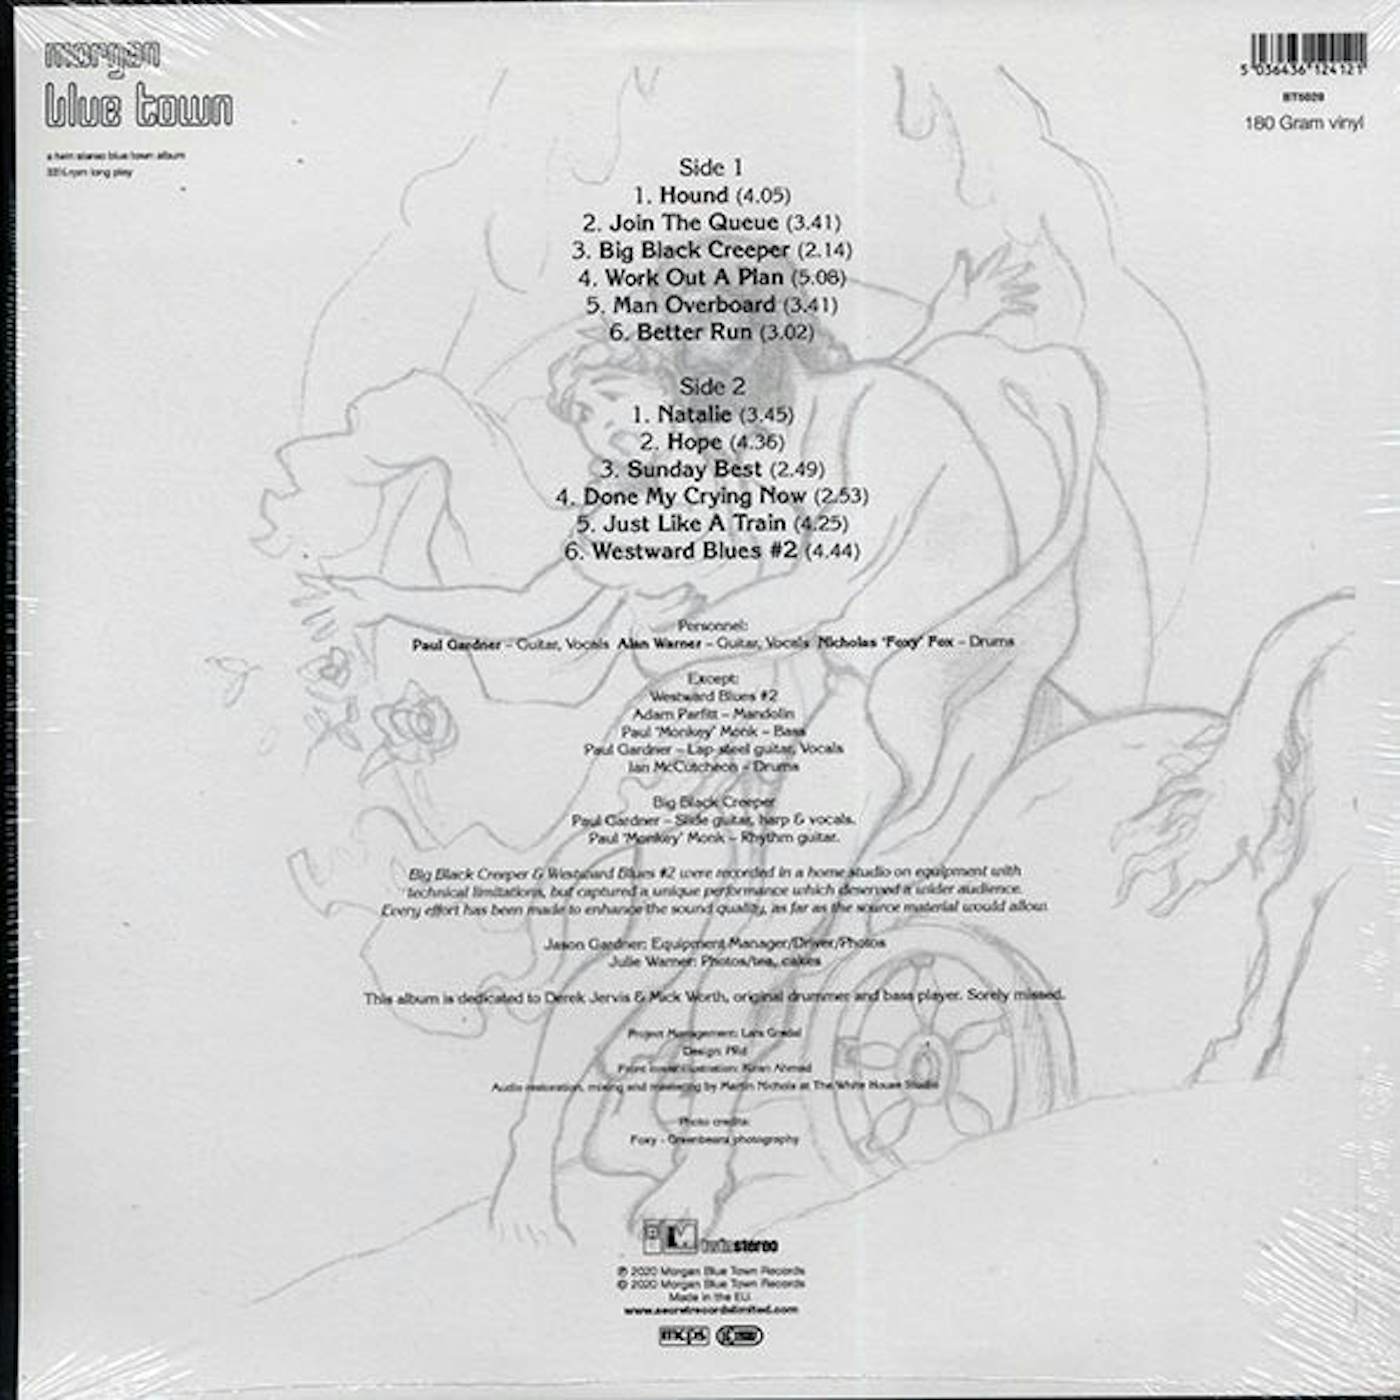 Pluto  LP -  Journey's End (180g) (Vinyl)